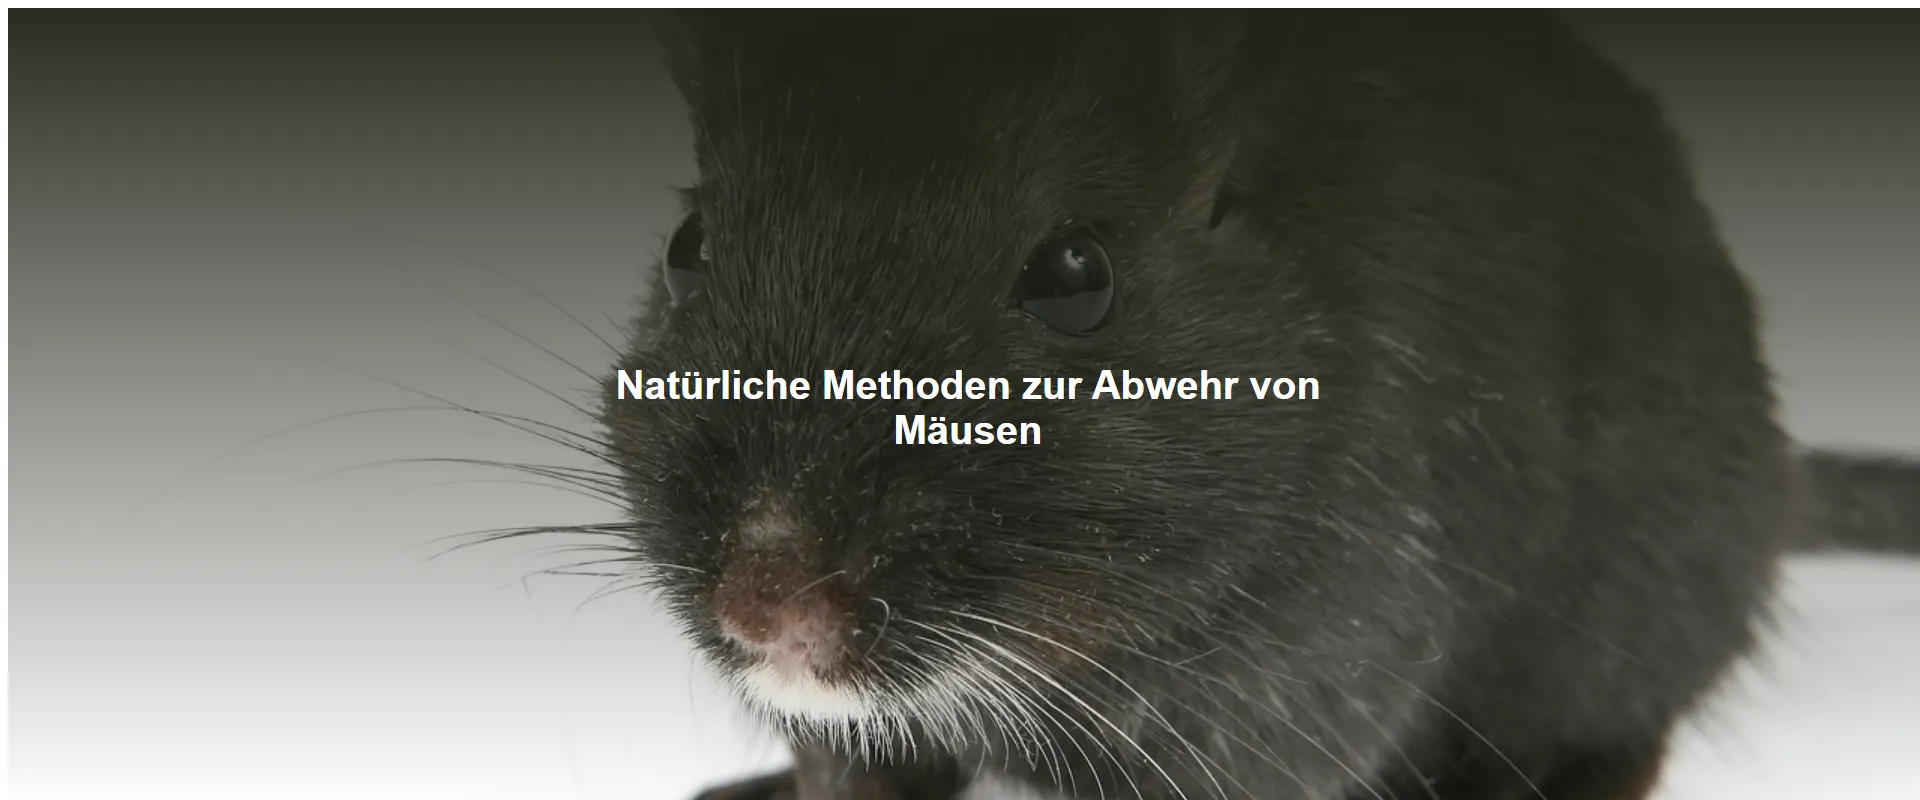 Natürliche Methoden zur Abwehr von Mäusen